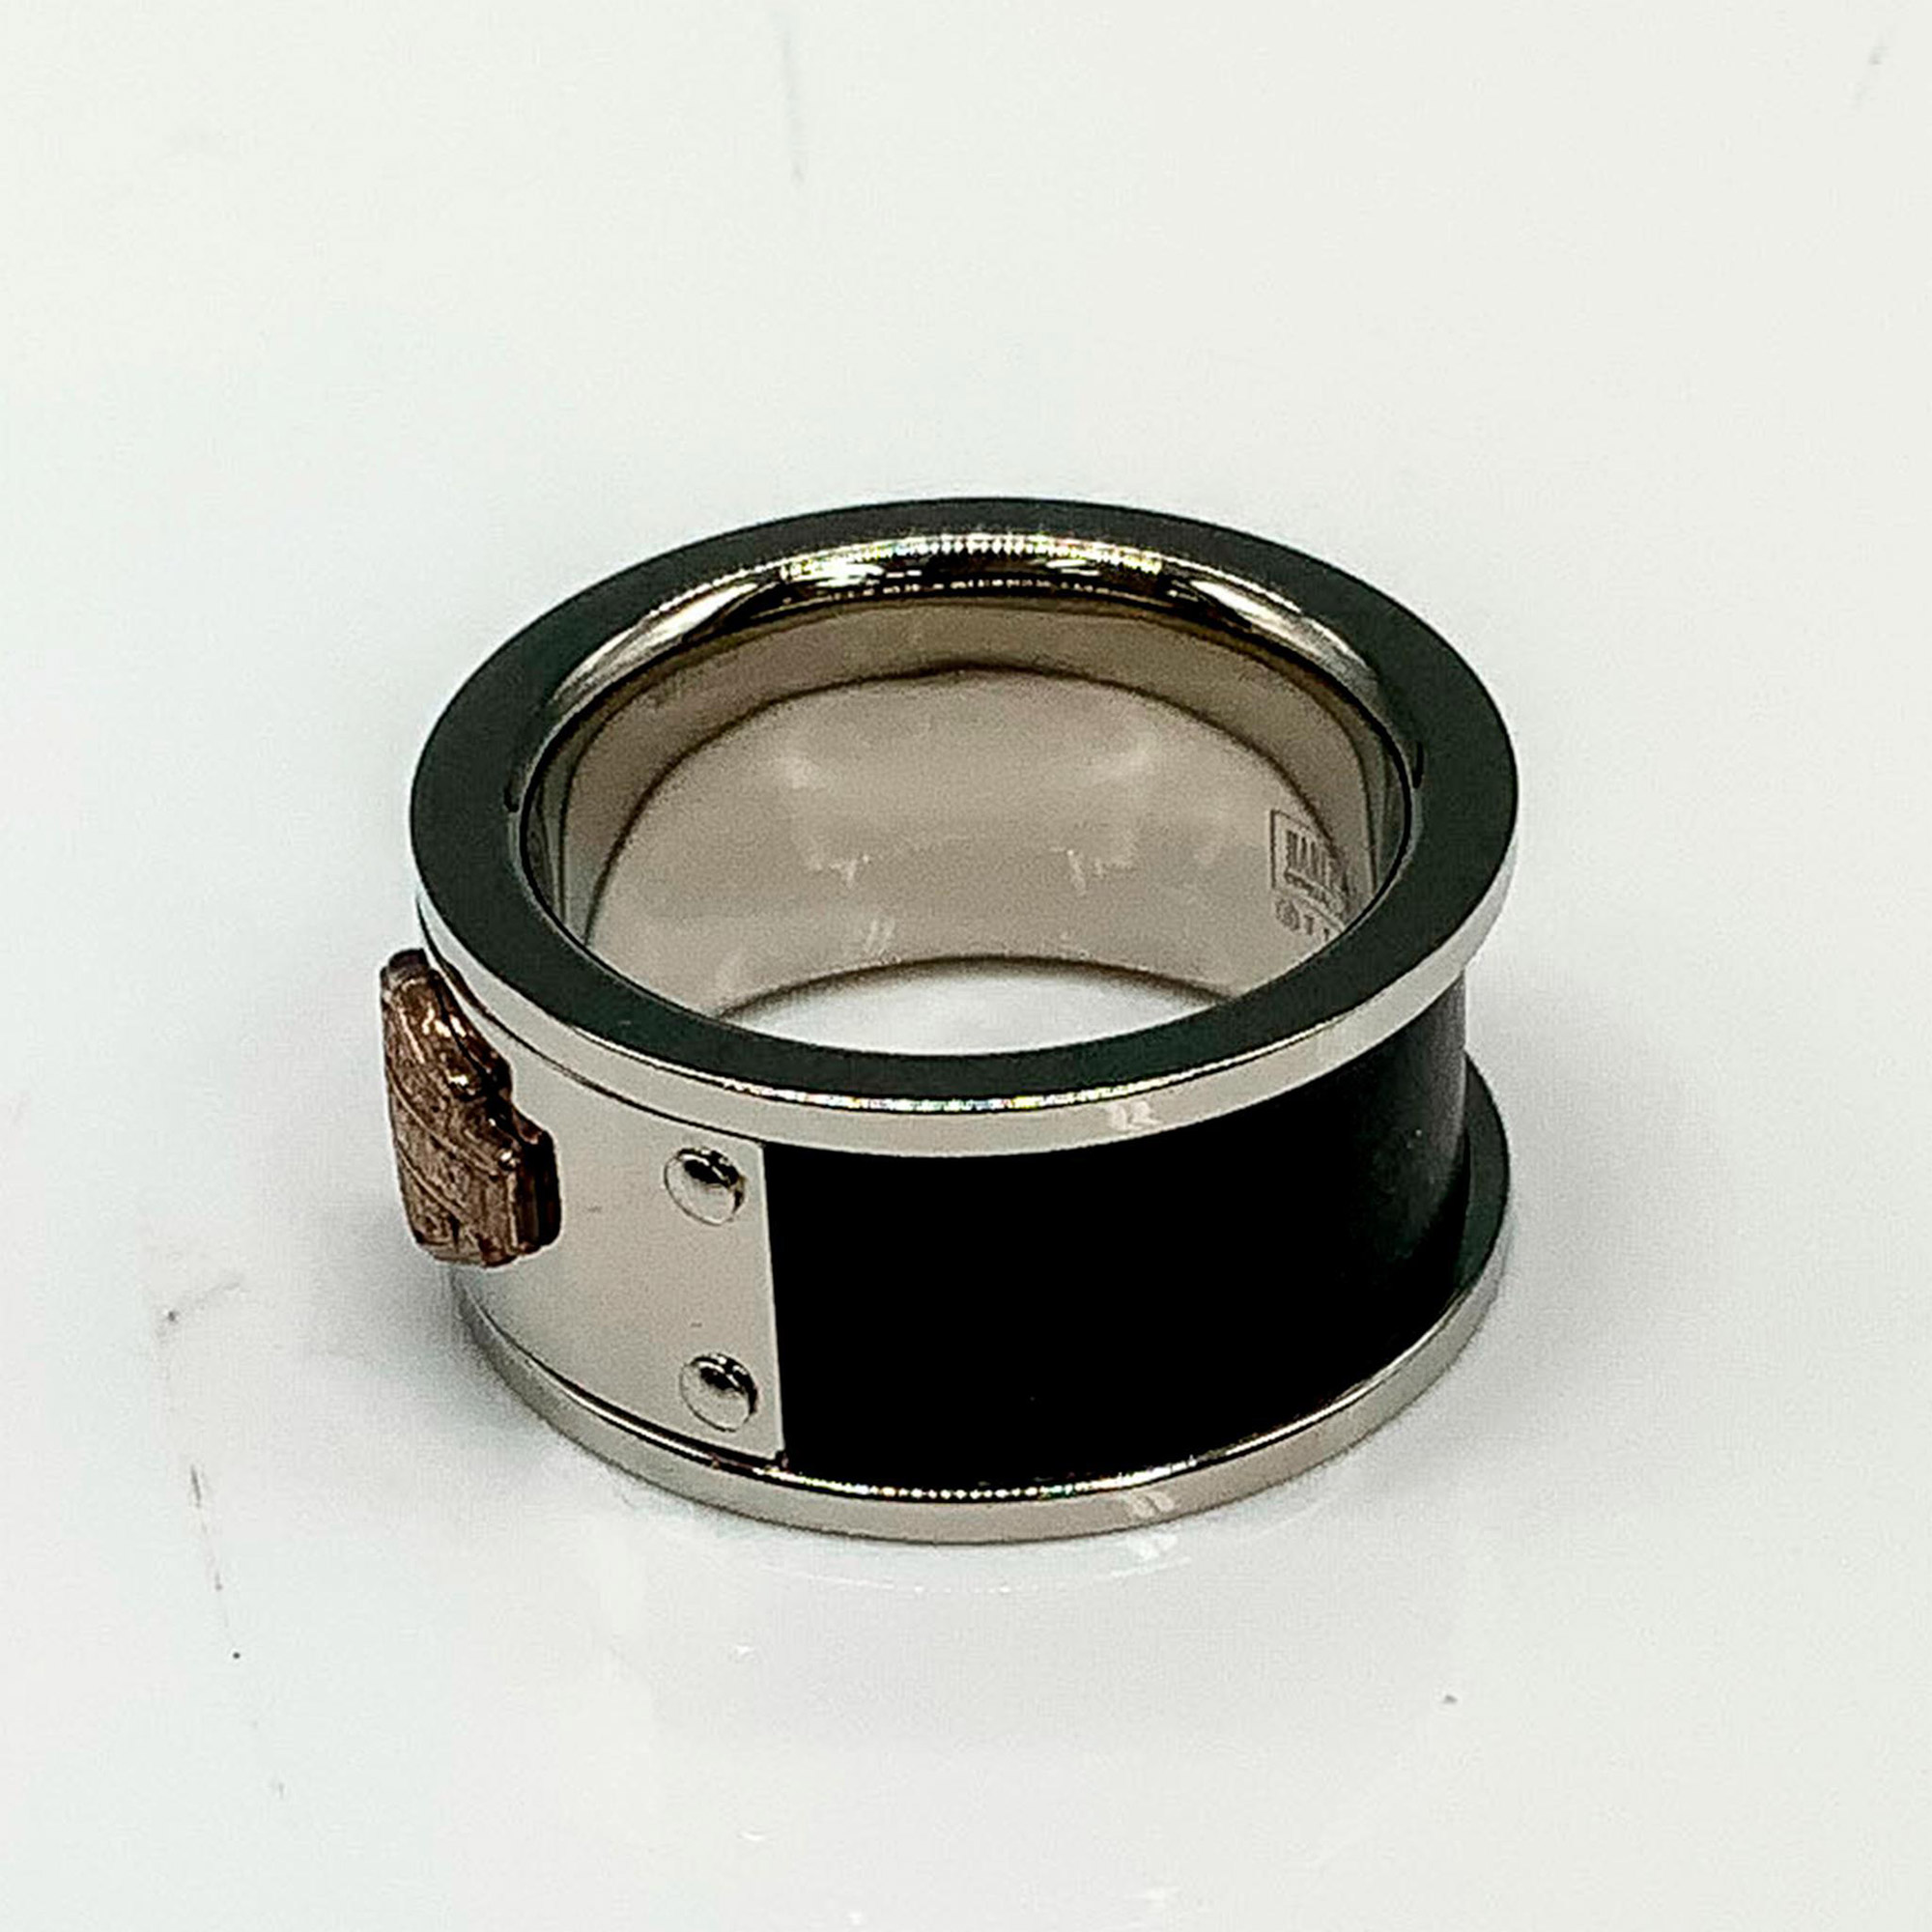 Harley Davidson Steel & Sterling Silver Black Band Ring - Image 3 of 3